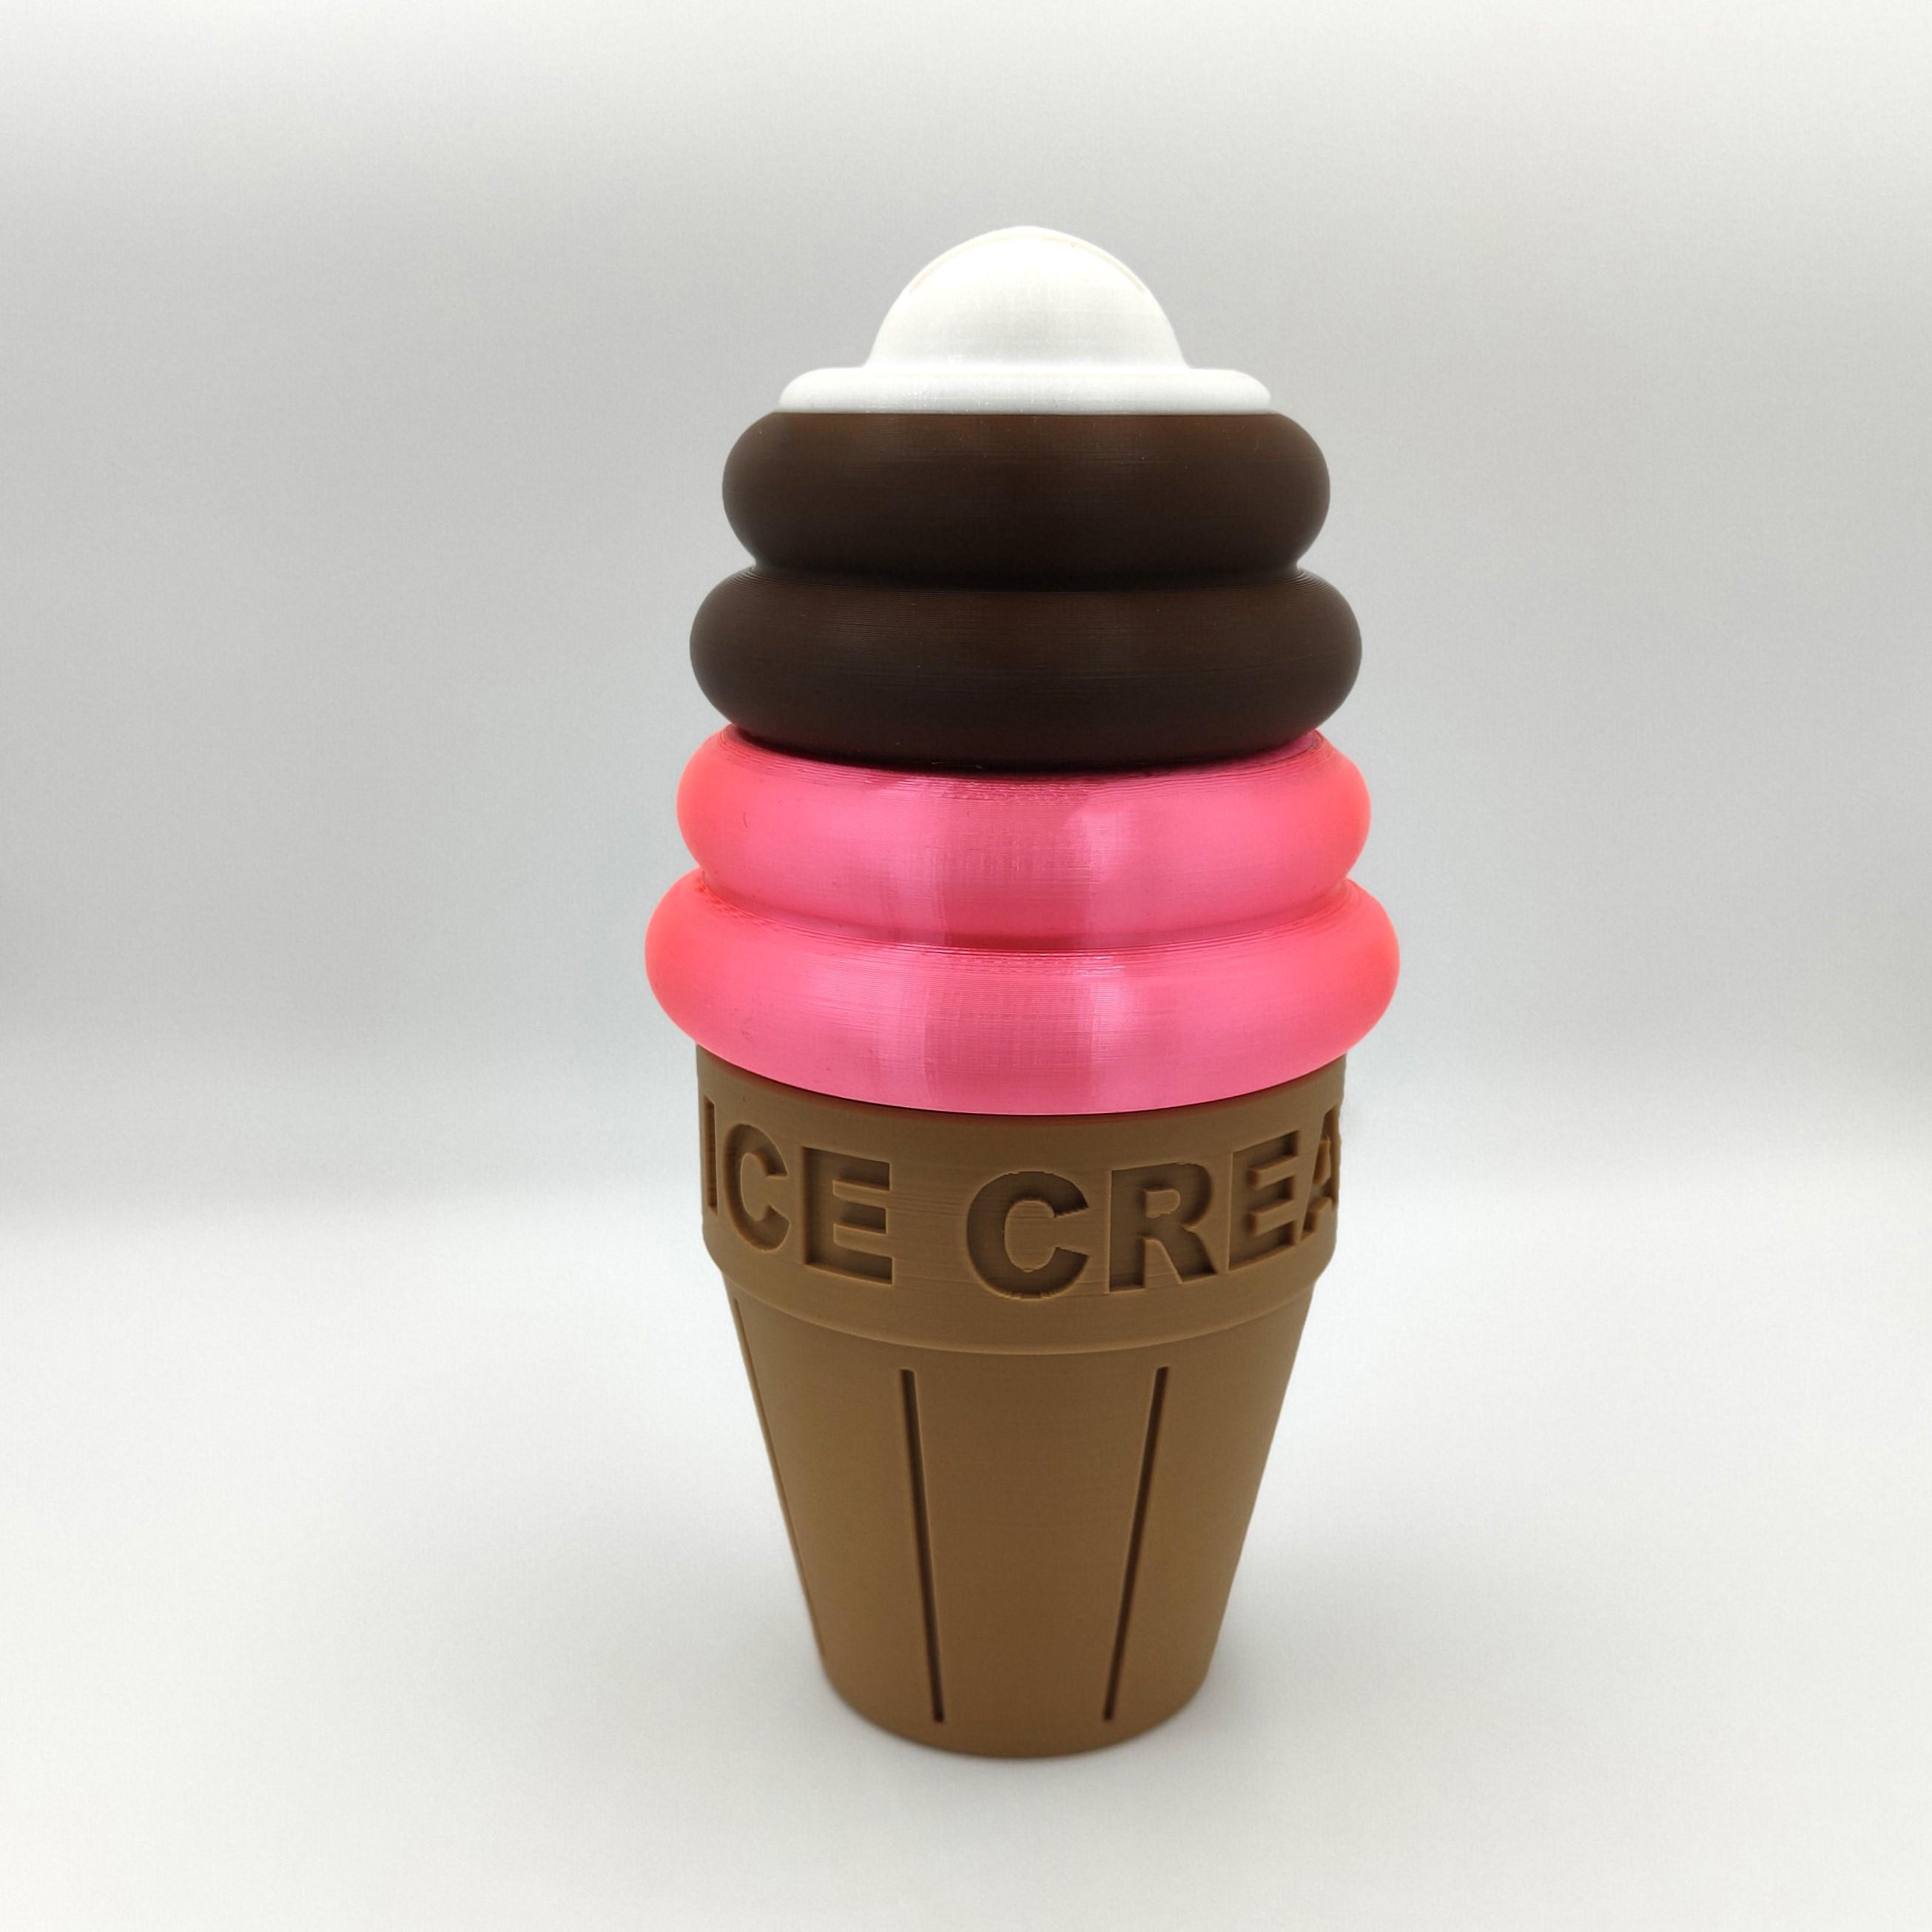 Ice Cream MoneyBox 3d model